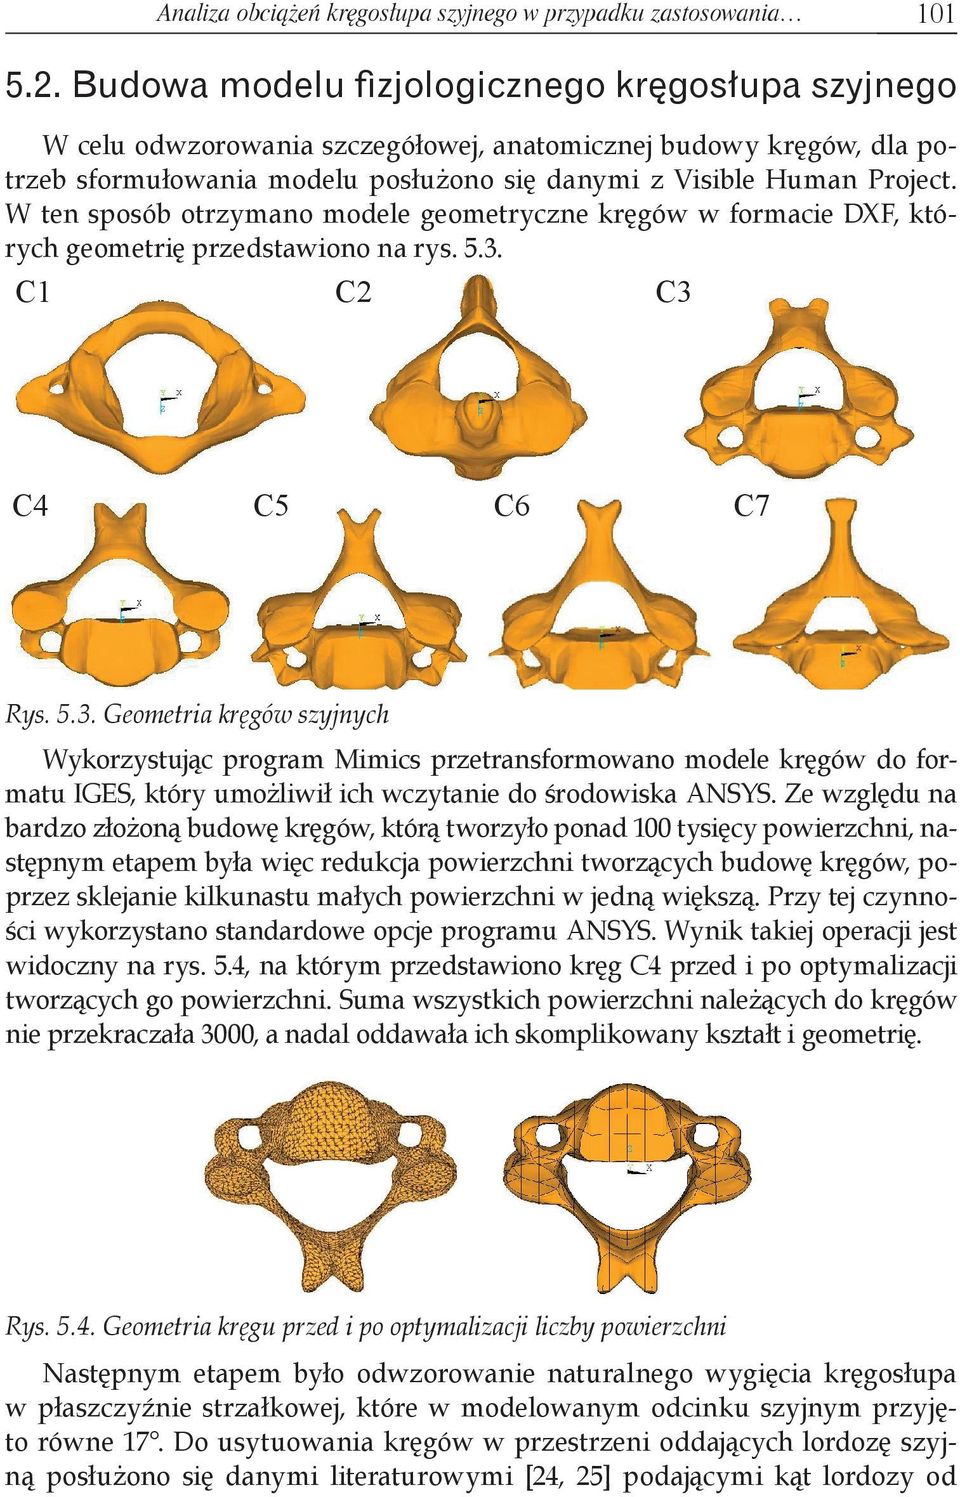 W ten sposób otrzymano modele geometryczne kręgów w formacie DXF, których geometrię przedstawiono na rys. 5.3.